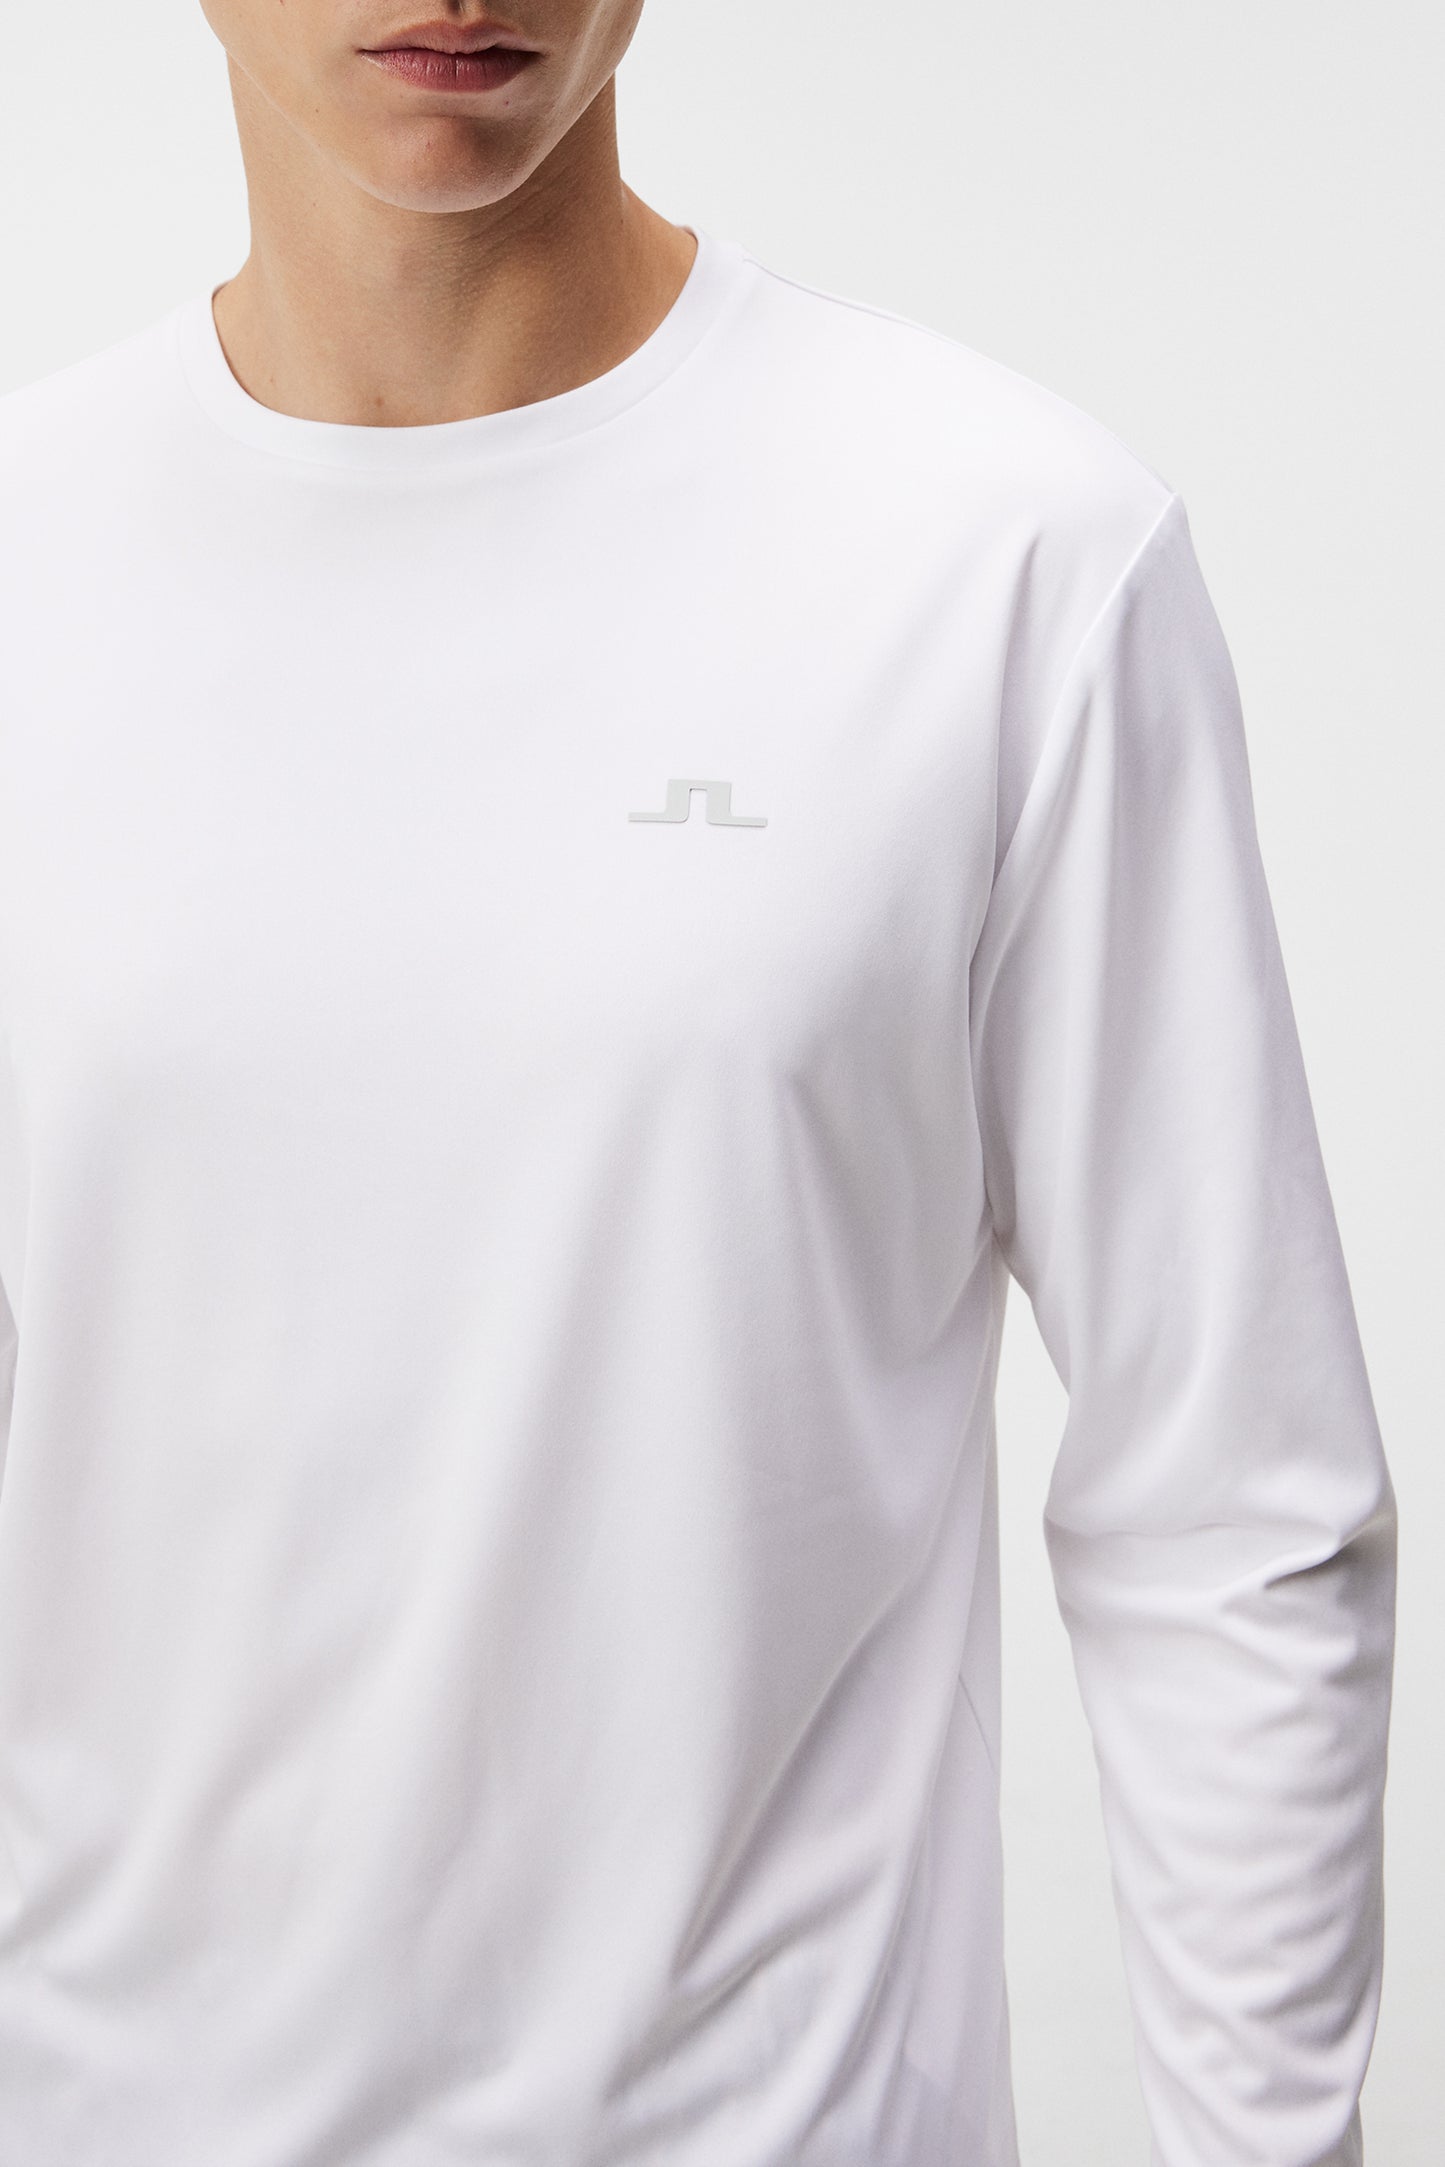 Ade T-shirt LS / White